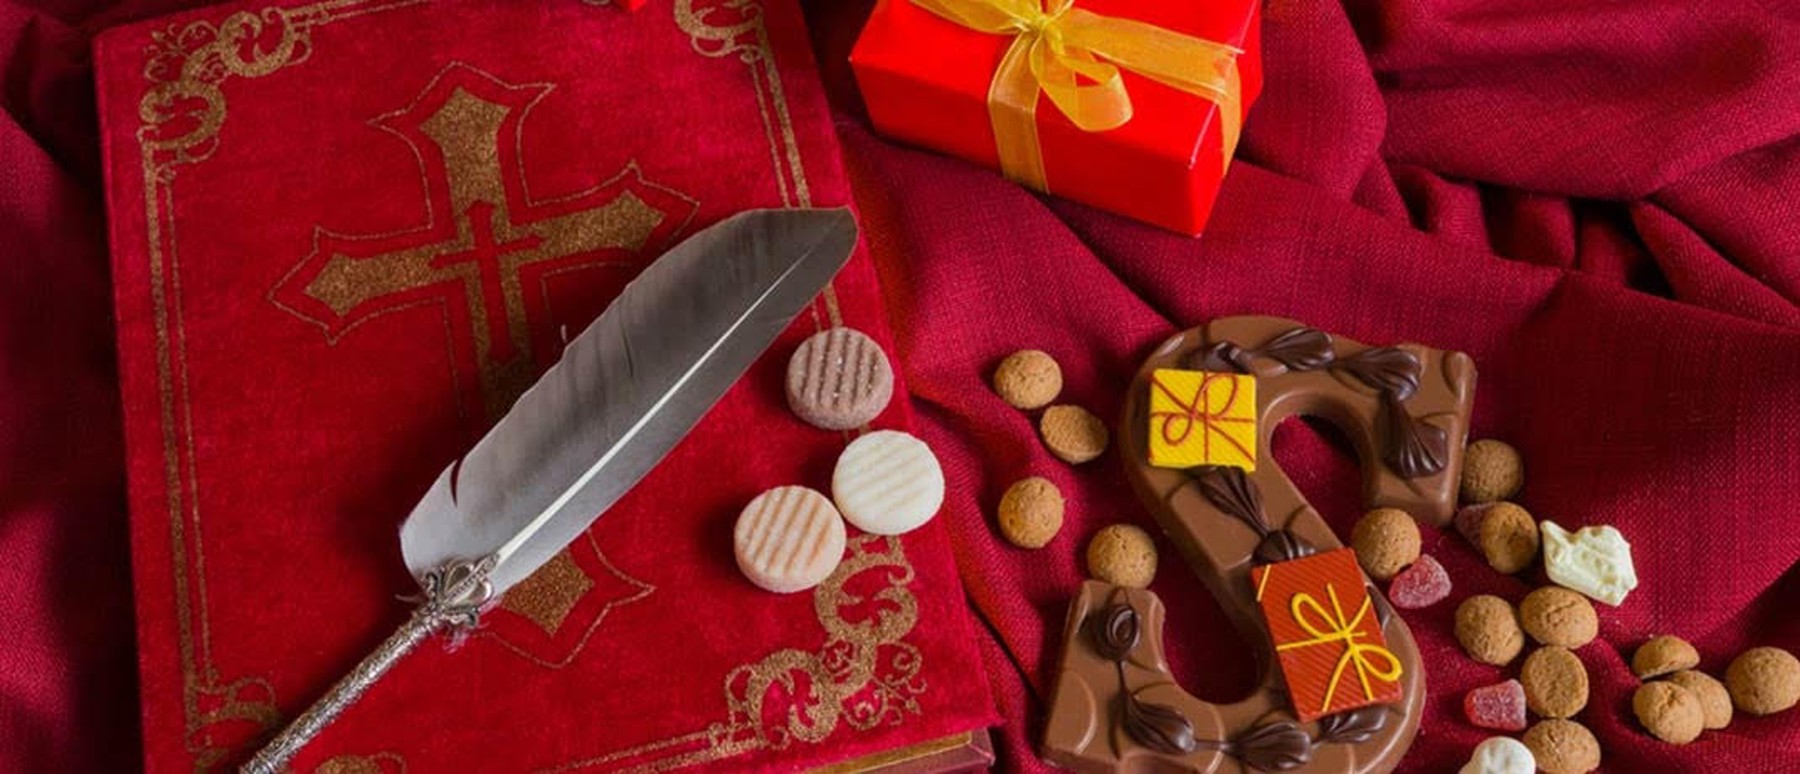 Bestel leuk en goedkoop speelgoed voor Sinterklaas met deze 4 tips